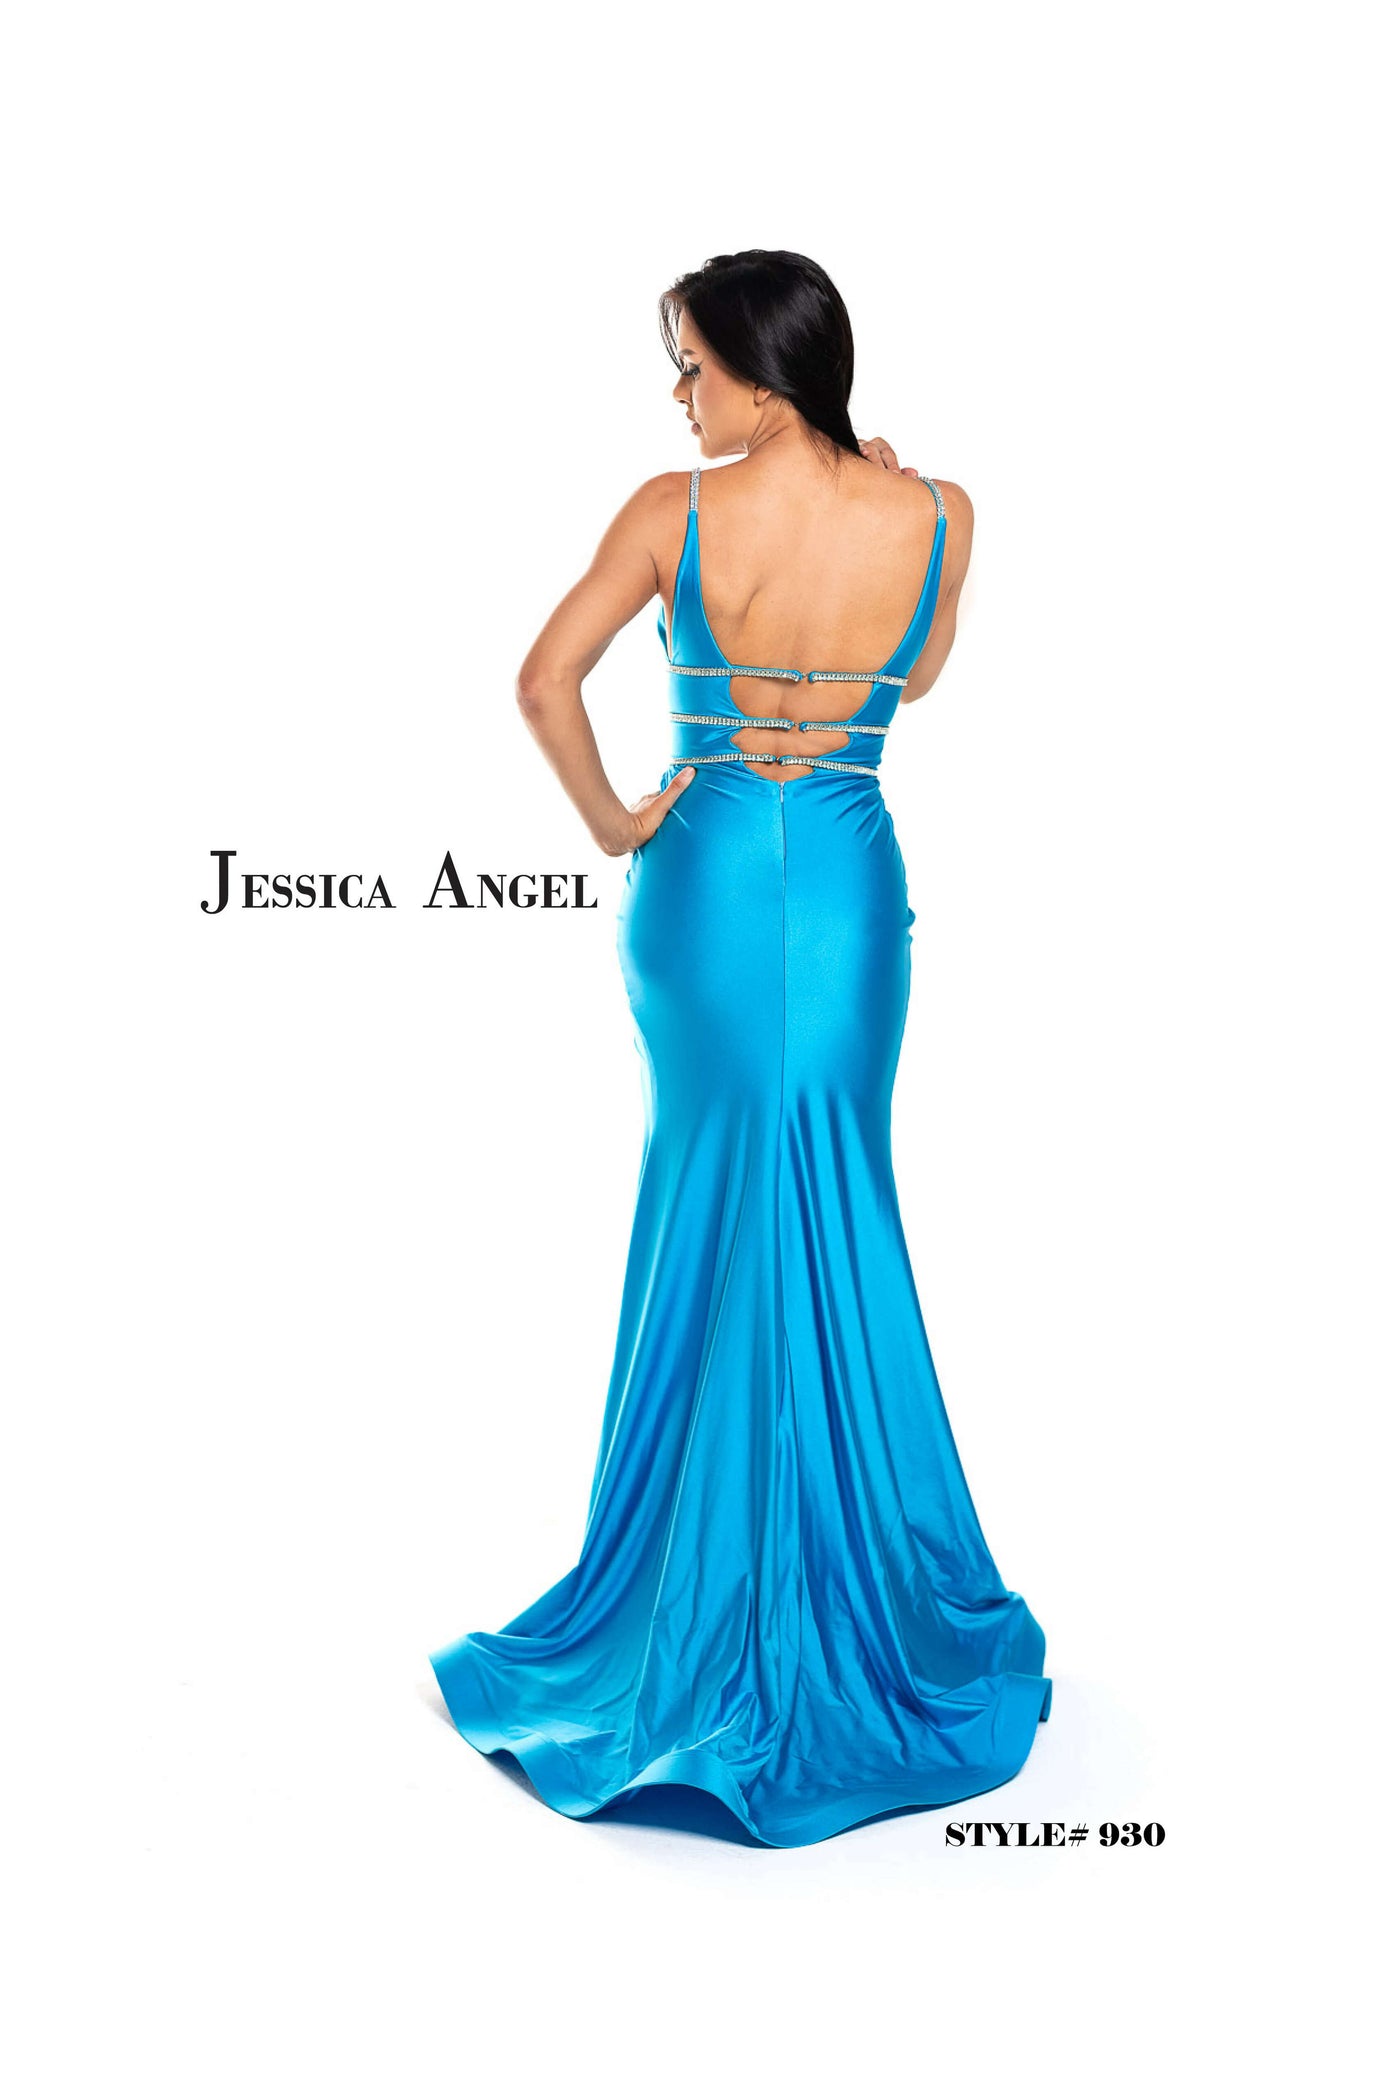 Jessica Angel 930